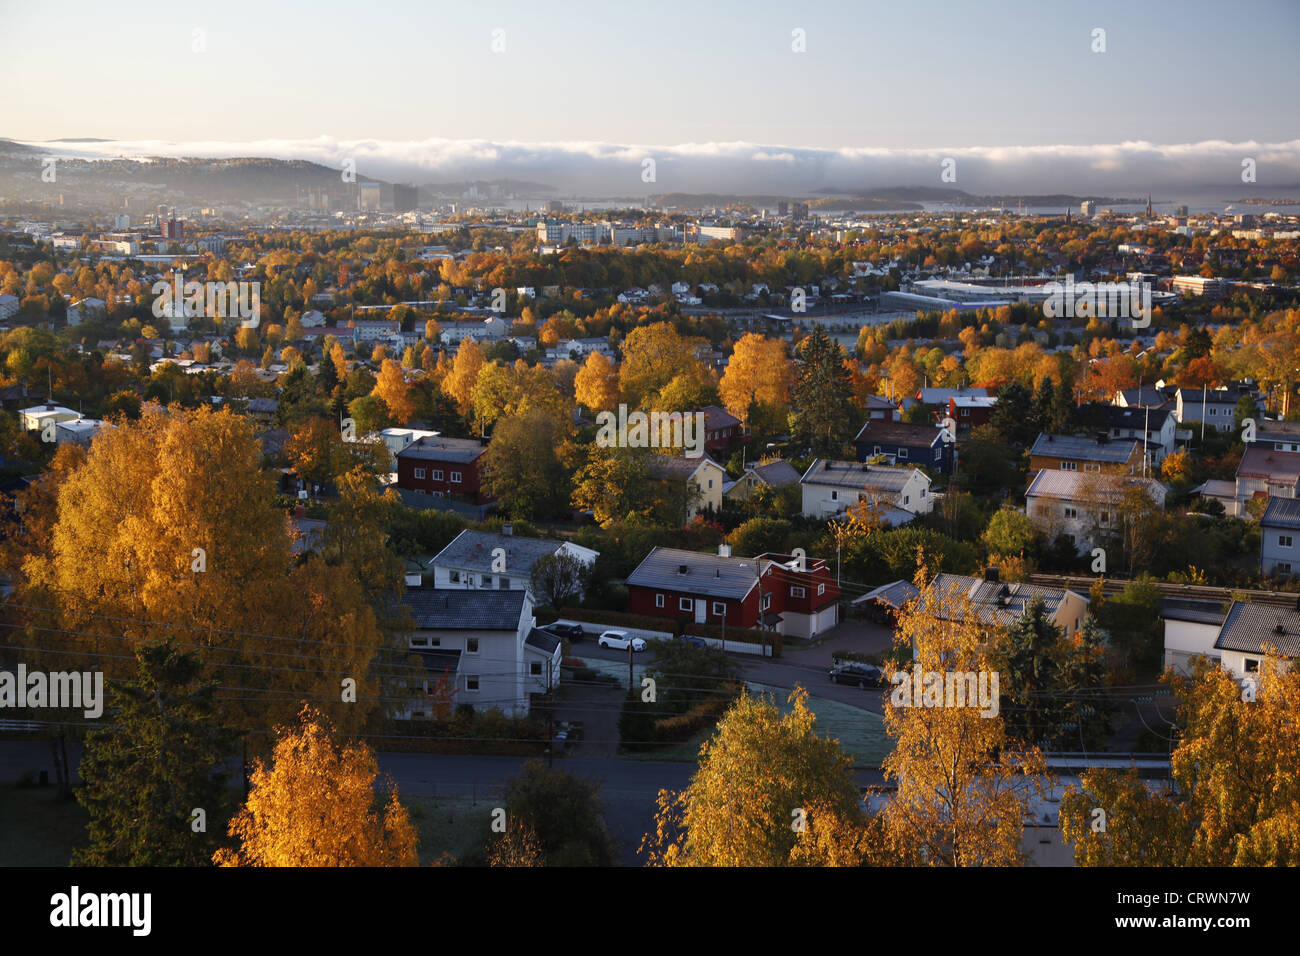 Oslo during autumn Stock Photo